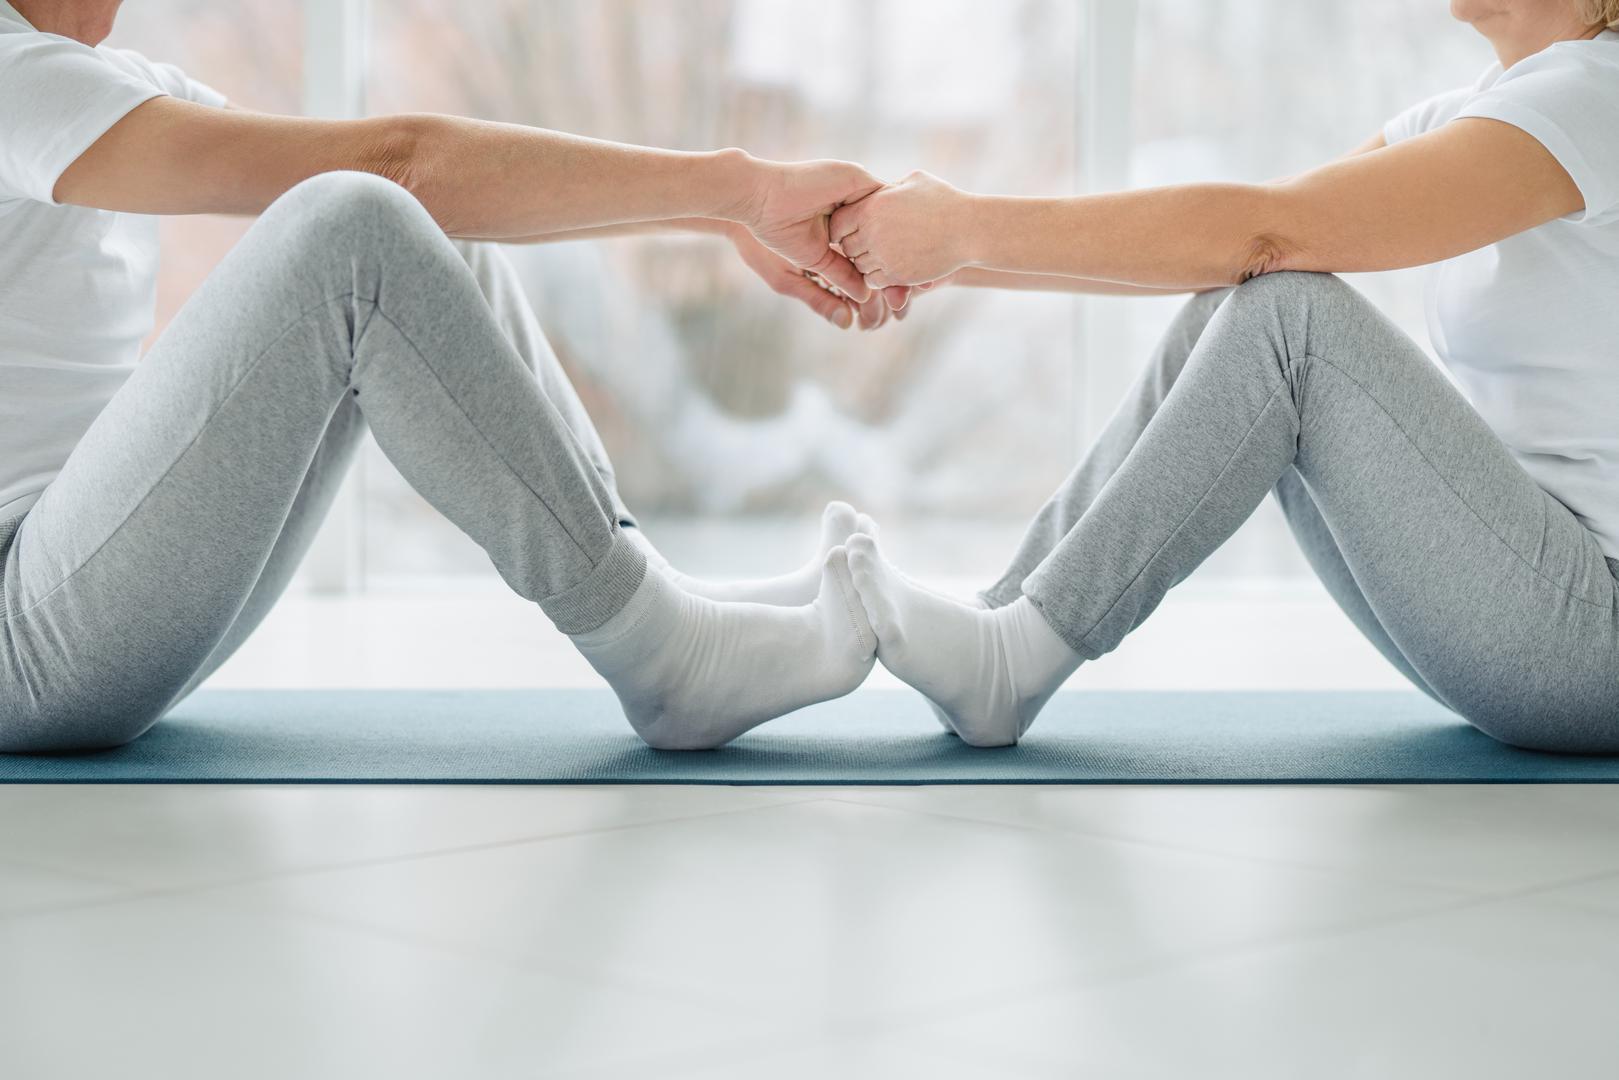 Zdravi zglobovi omogućuju vam bavljenje sportom, vježbanje i obavljanje svakodnevnih zadataka. Nažalost, oko 1 od 5 odraslih ima artritis, što je oticanje jednog ili više zglobova. Kako bi izbjegli bol i ograničenja kretanja i fleksibilnosti, stručnjaci su podijelili pet jednostavnih savjeta za održavanje zdravih zglobova kako starite, piše NY Post.